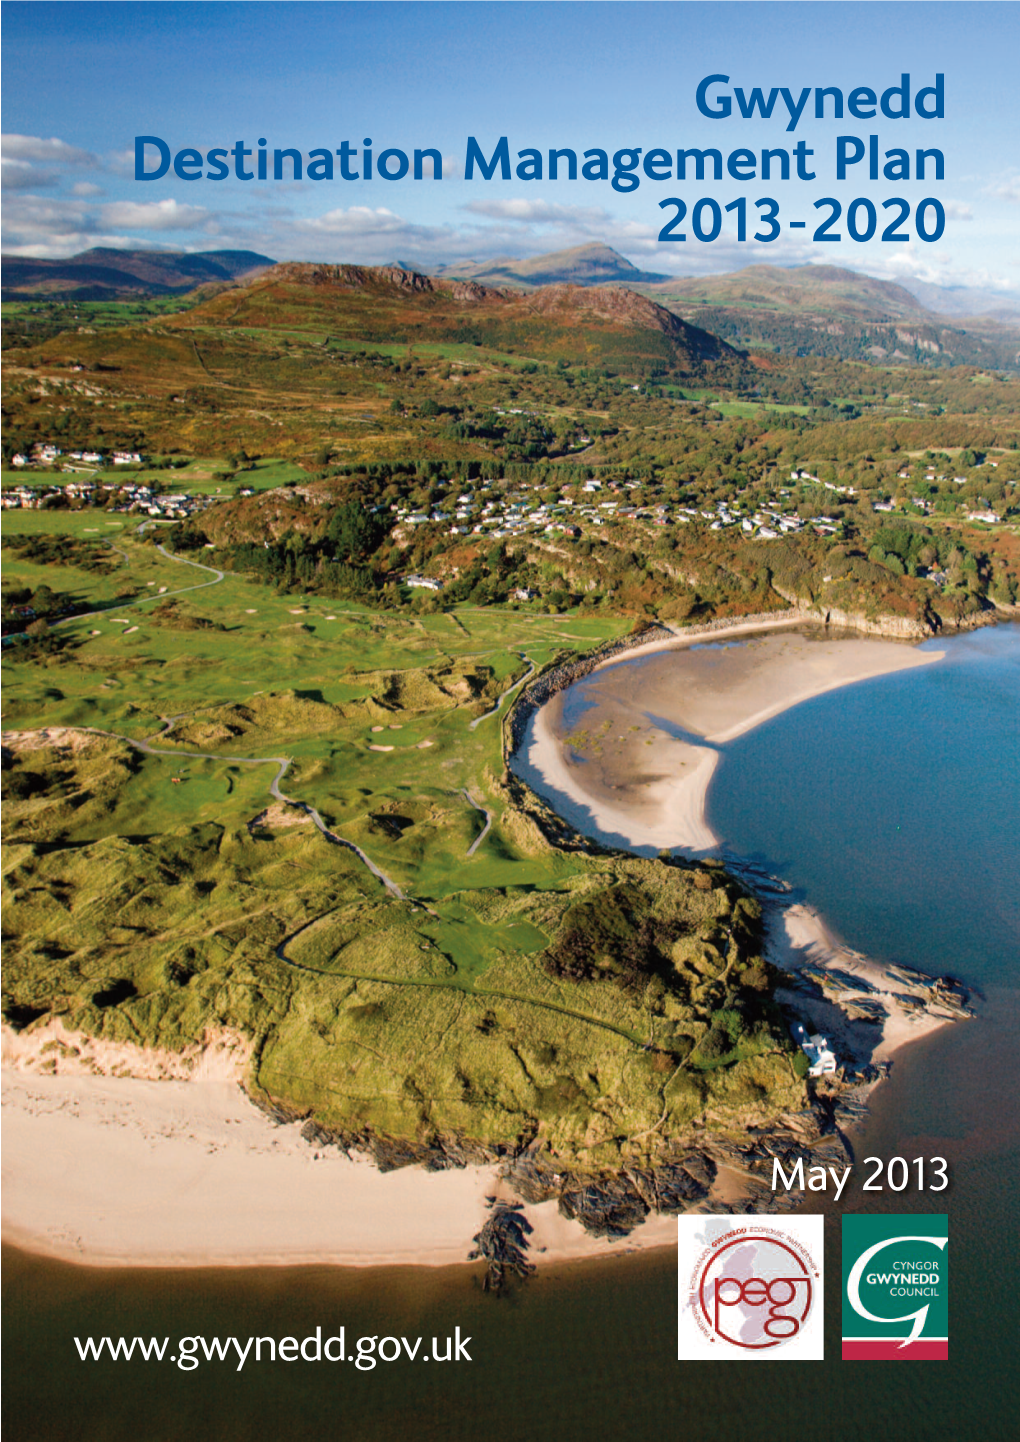 Gwynedd Destination Management Plan 2013-2020